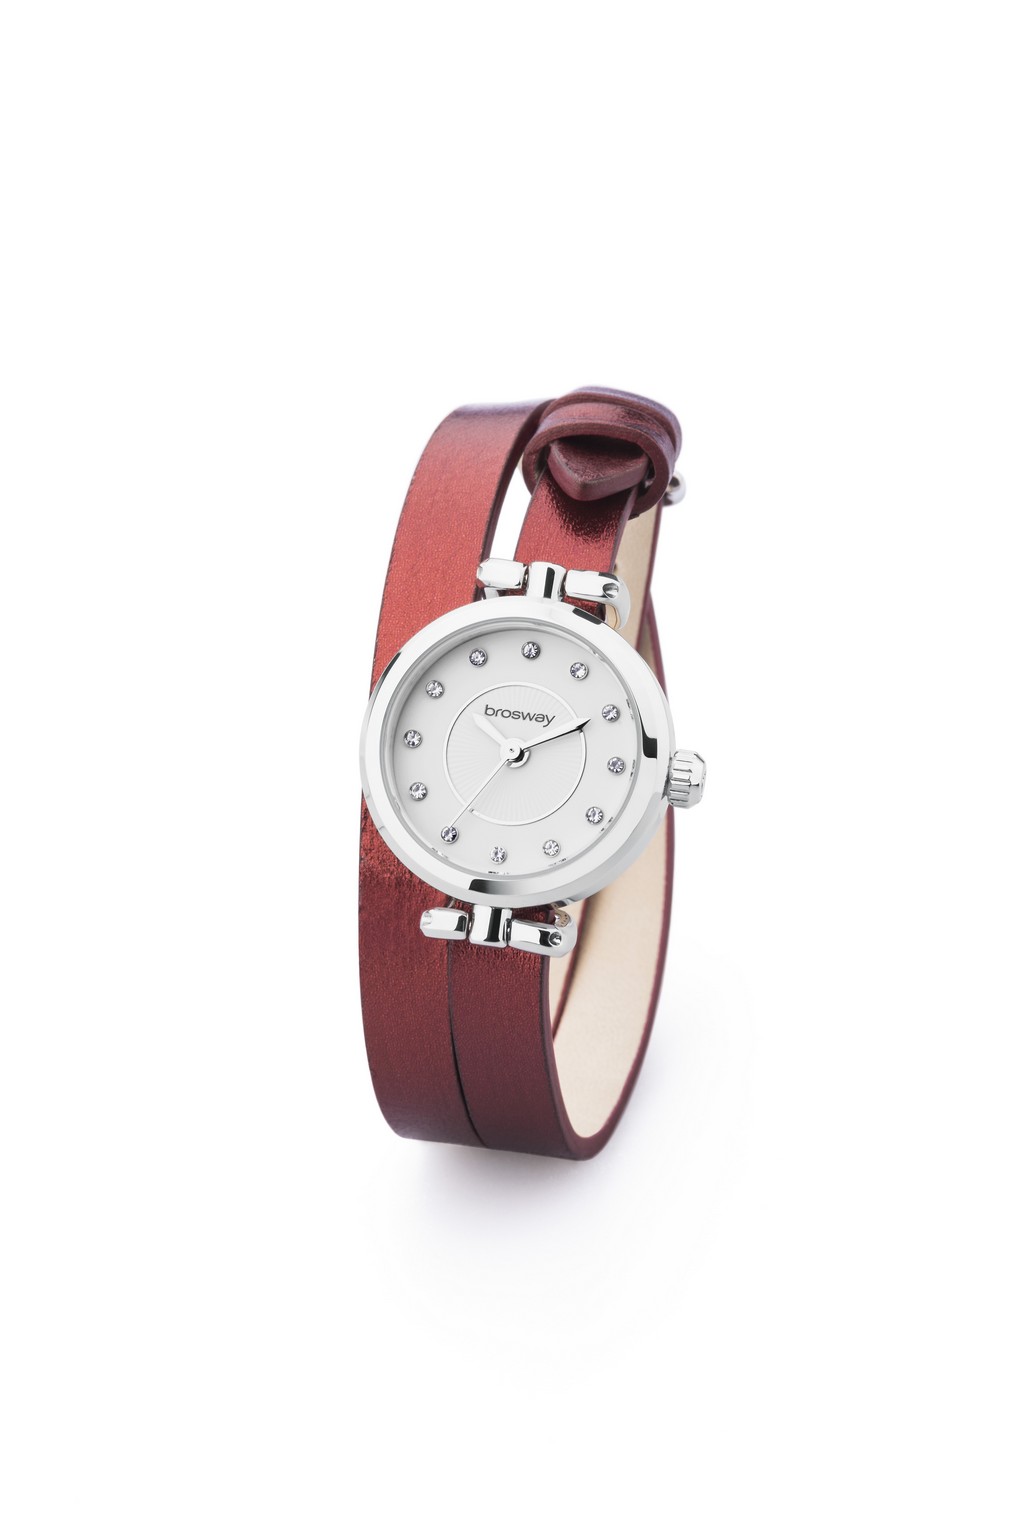 Brosway orologi: presentata la nuova collezione Olivia, le foto